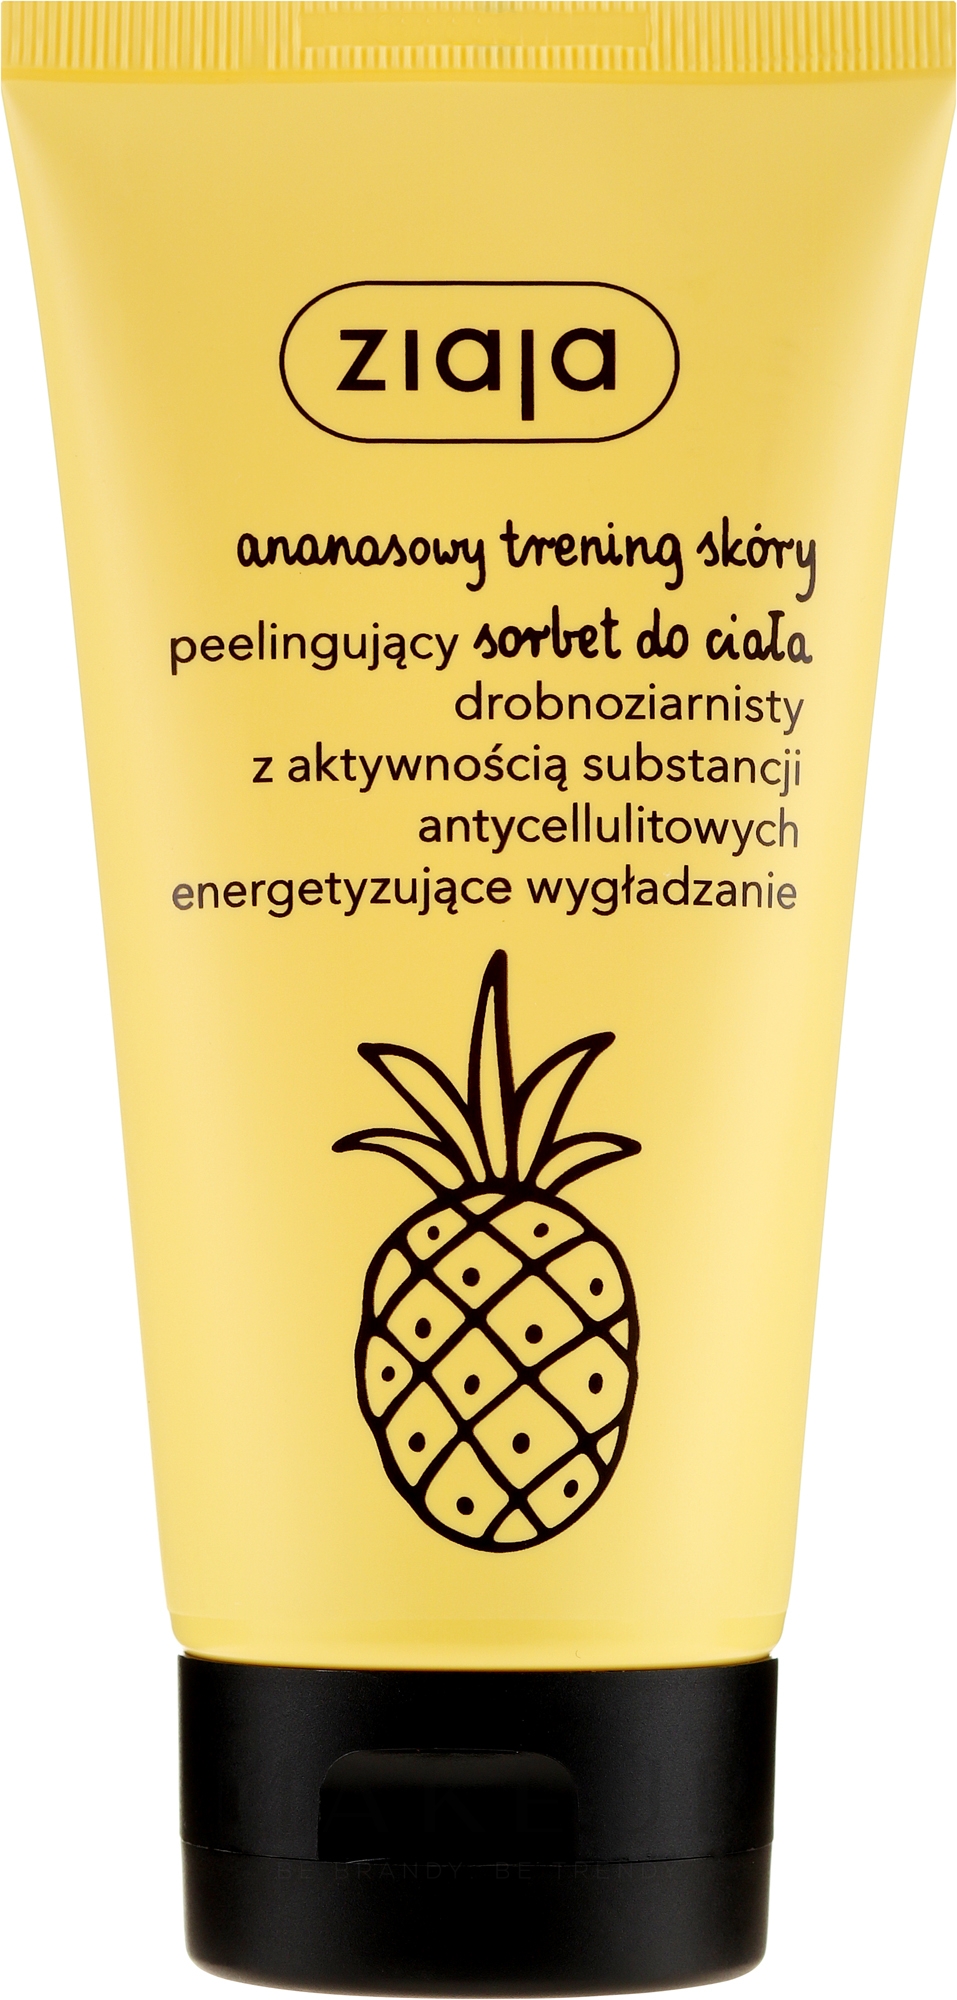 Glättendes und energetisierendes Anti-Cellulite Körperpeeling mit Ananasextrakt - Ziaja Pineapple Body Scrub — Bild 160 ml